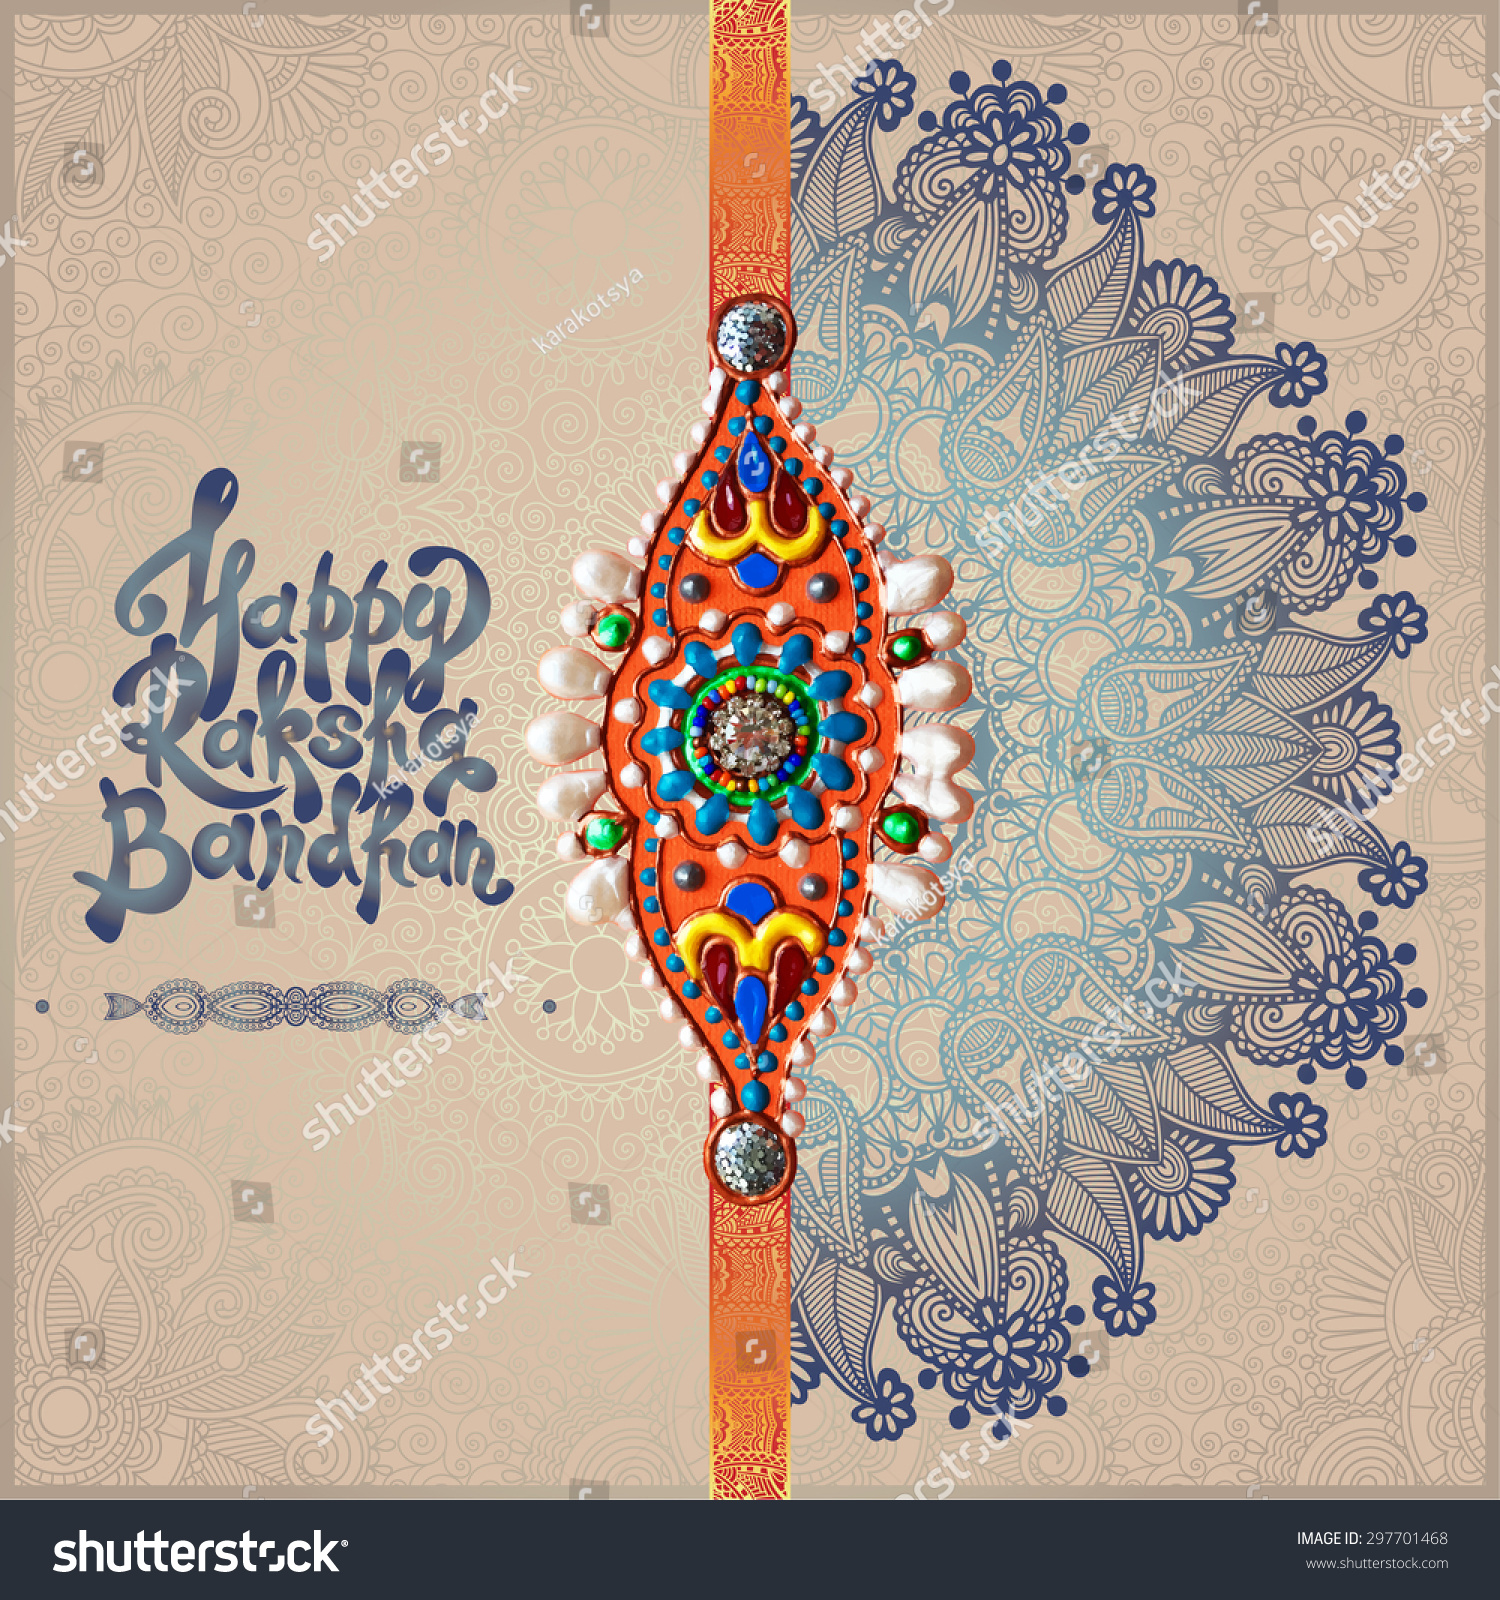 SVG of original handmade rakhi on floral background with lettering Happy Raksha Bandhan for indian festival sisters and brothers, vector illustration svg